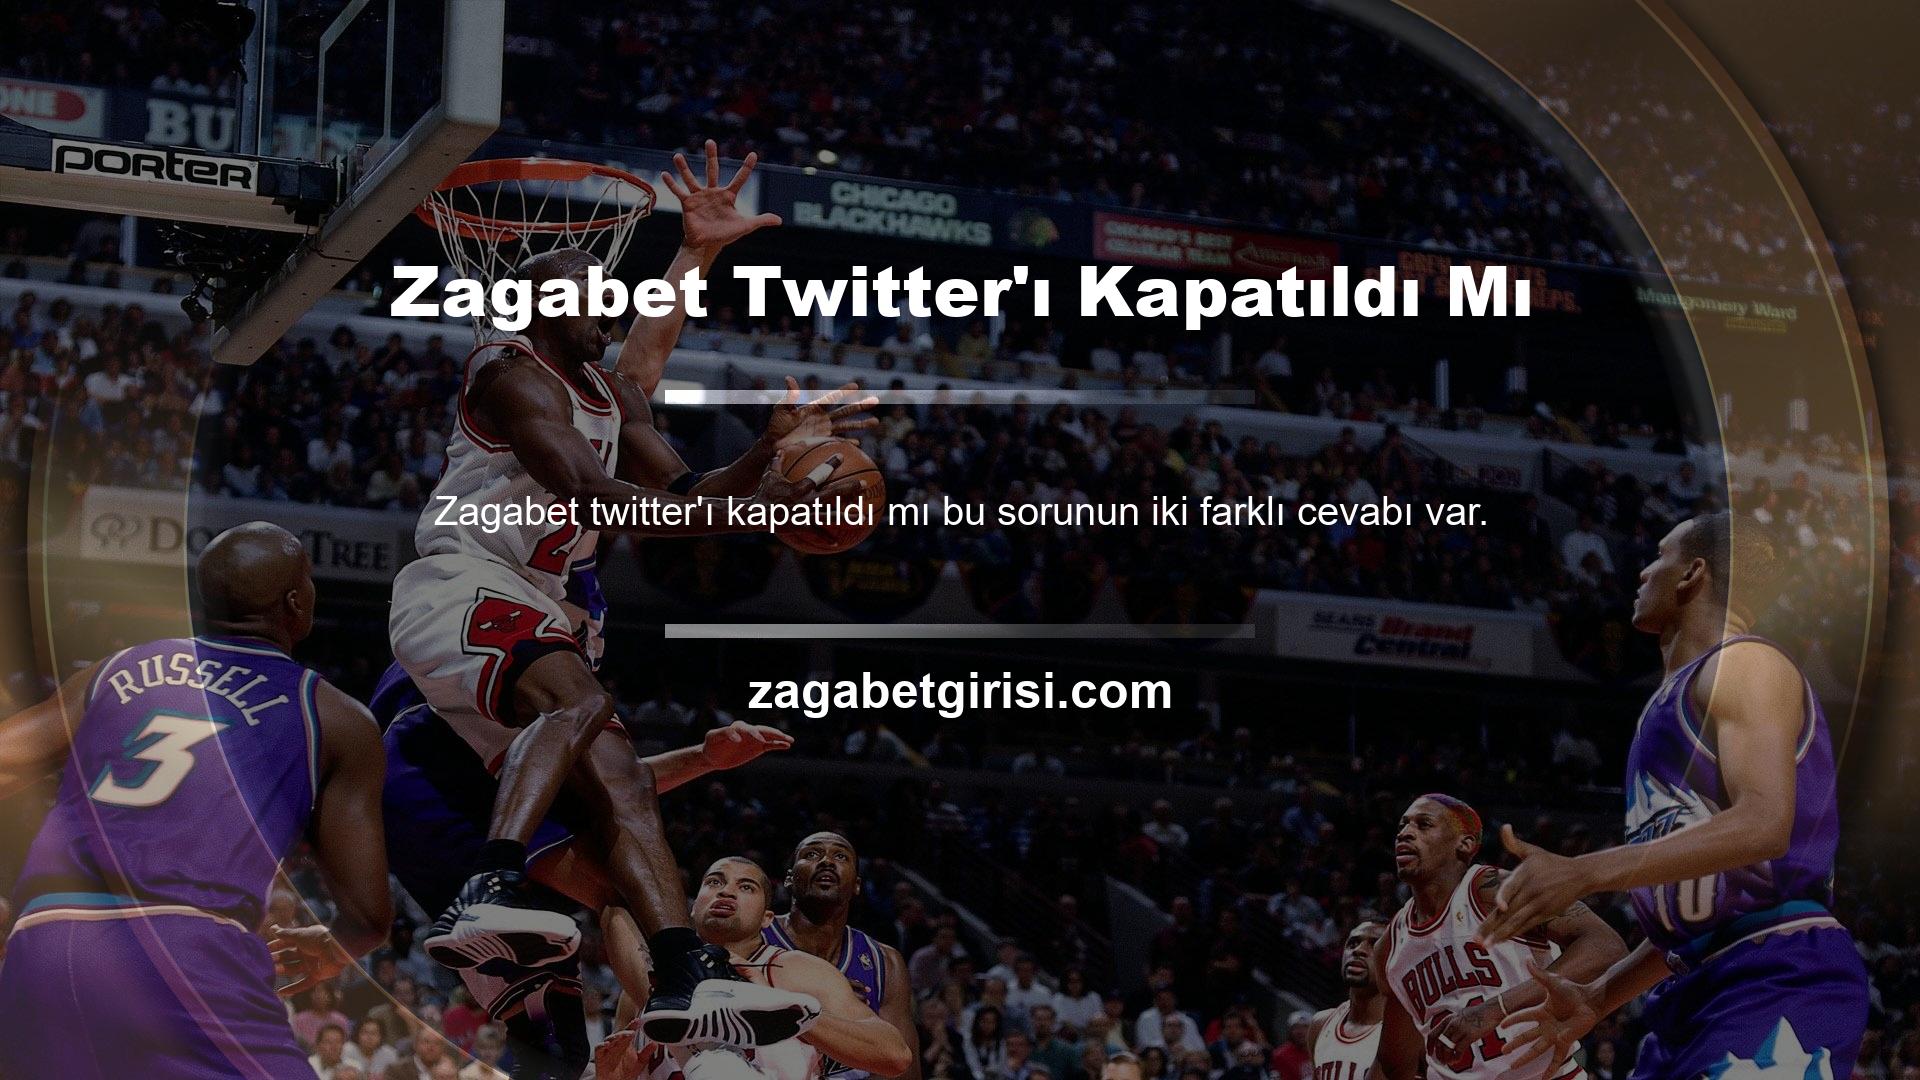 Evet, Zagabet sitesine erişimin engellenmesi kararı bulunmaktadır